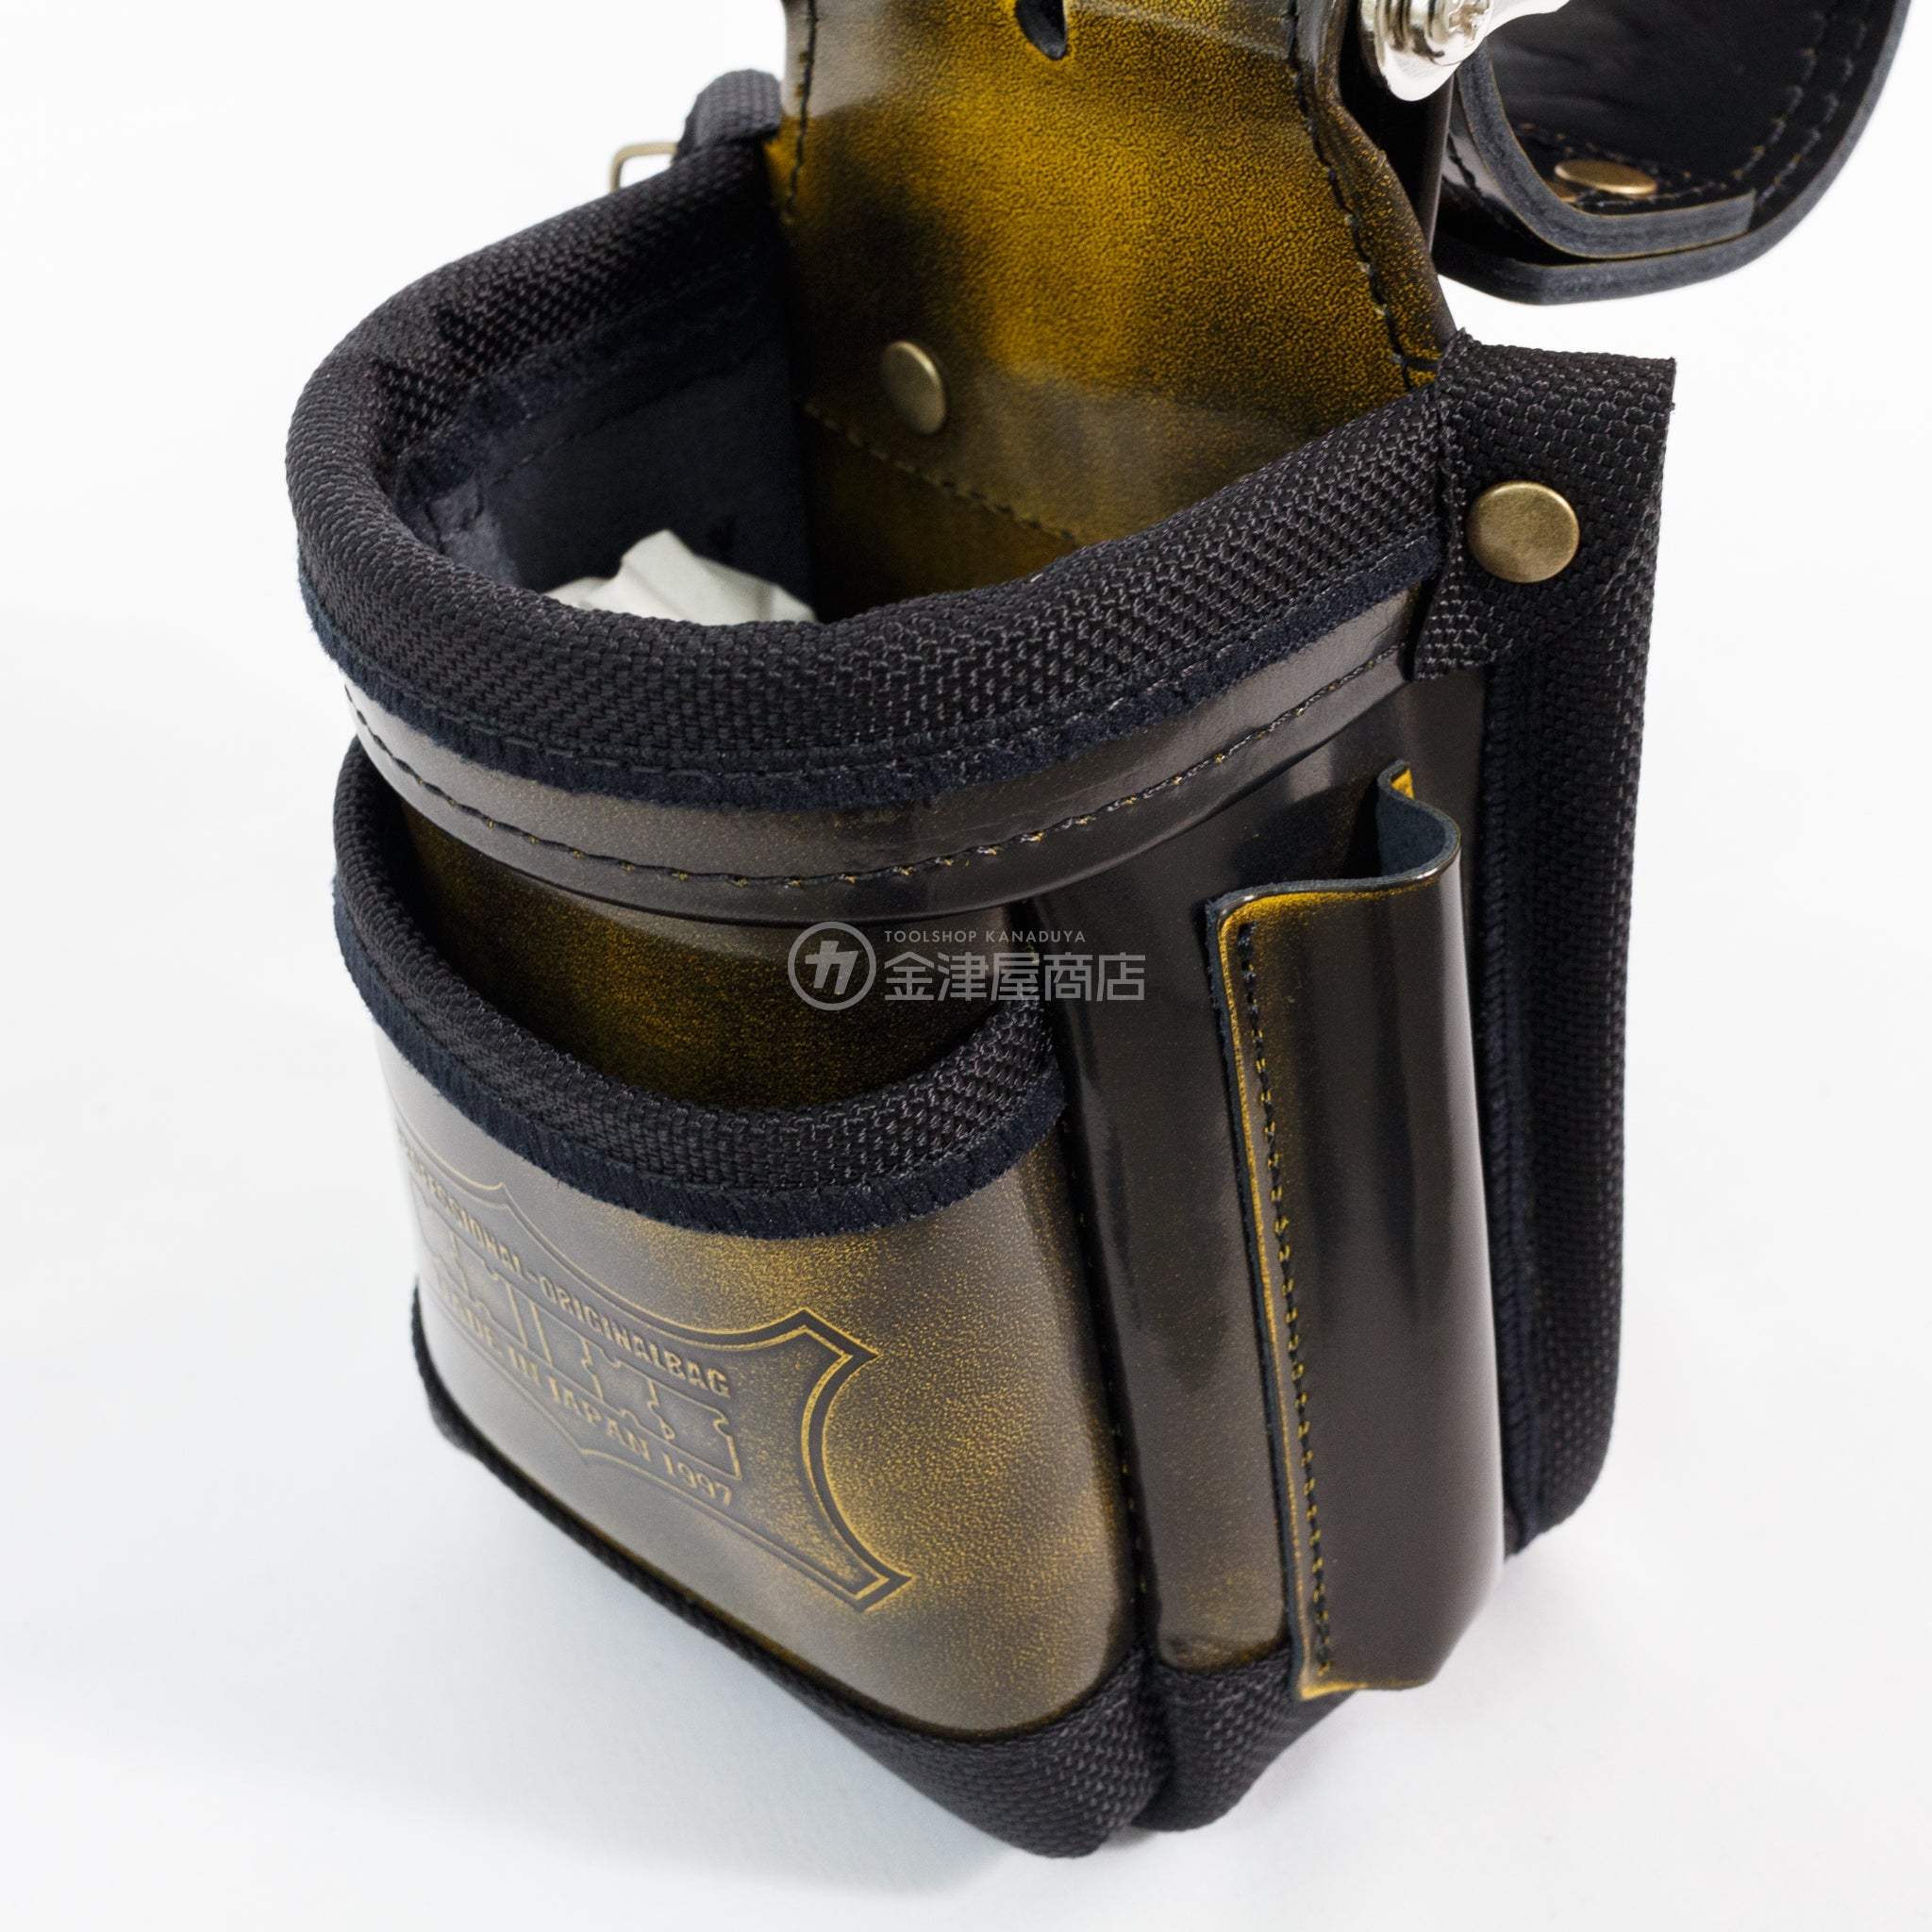 ニックス(KNICKS) アドバンガラス革 小物腰袋 ADV-201VADX